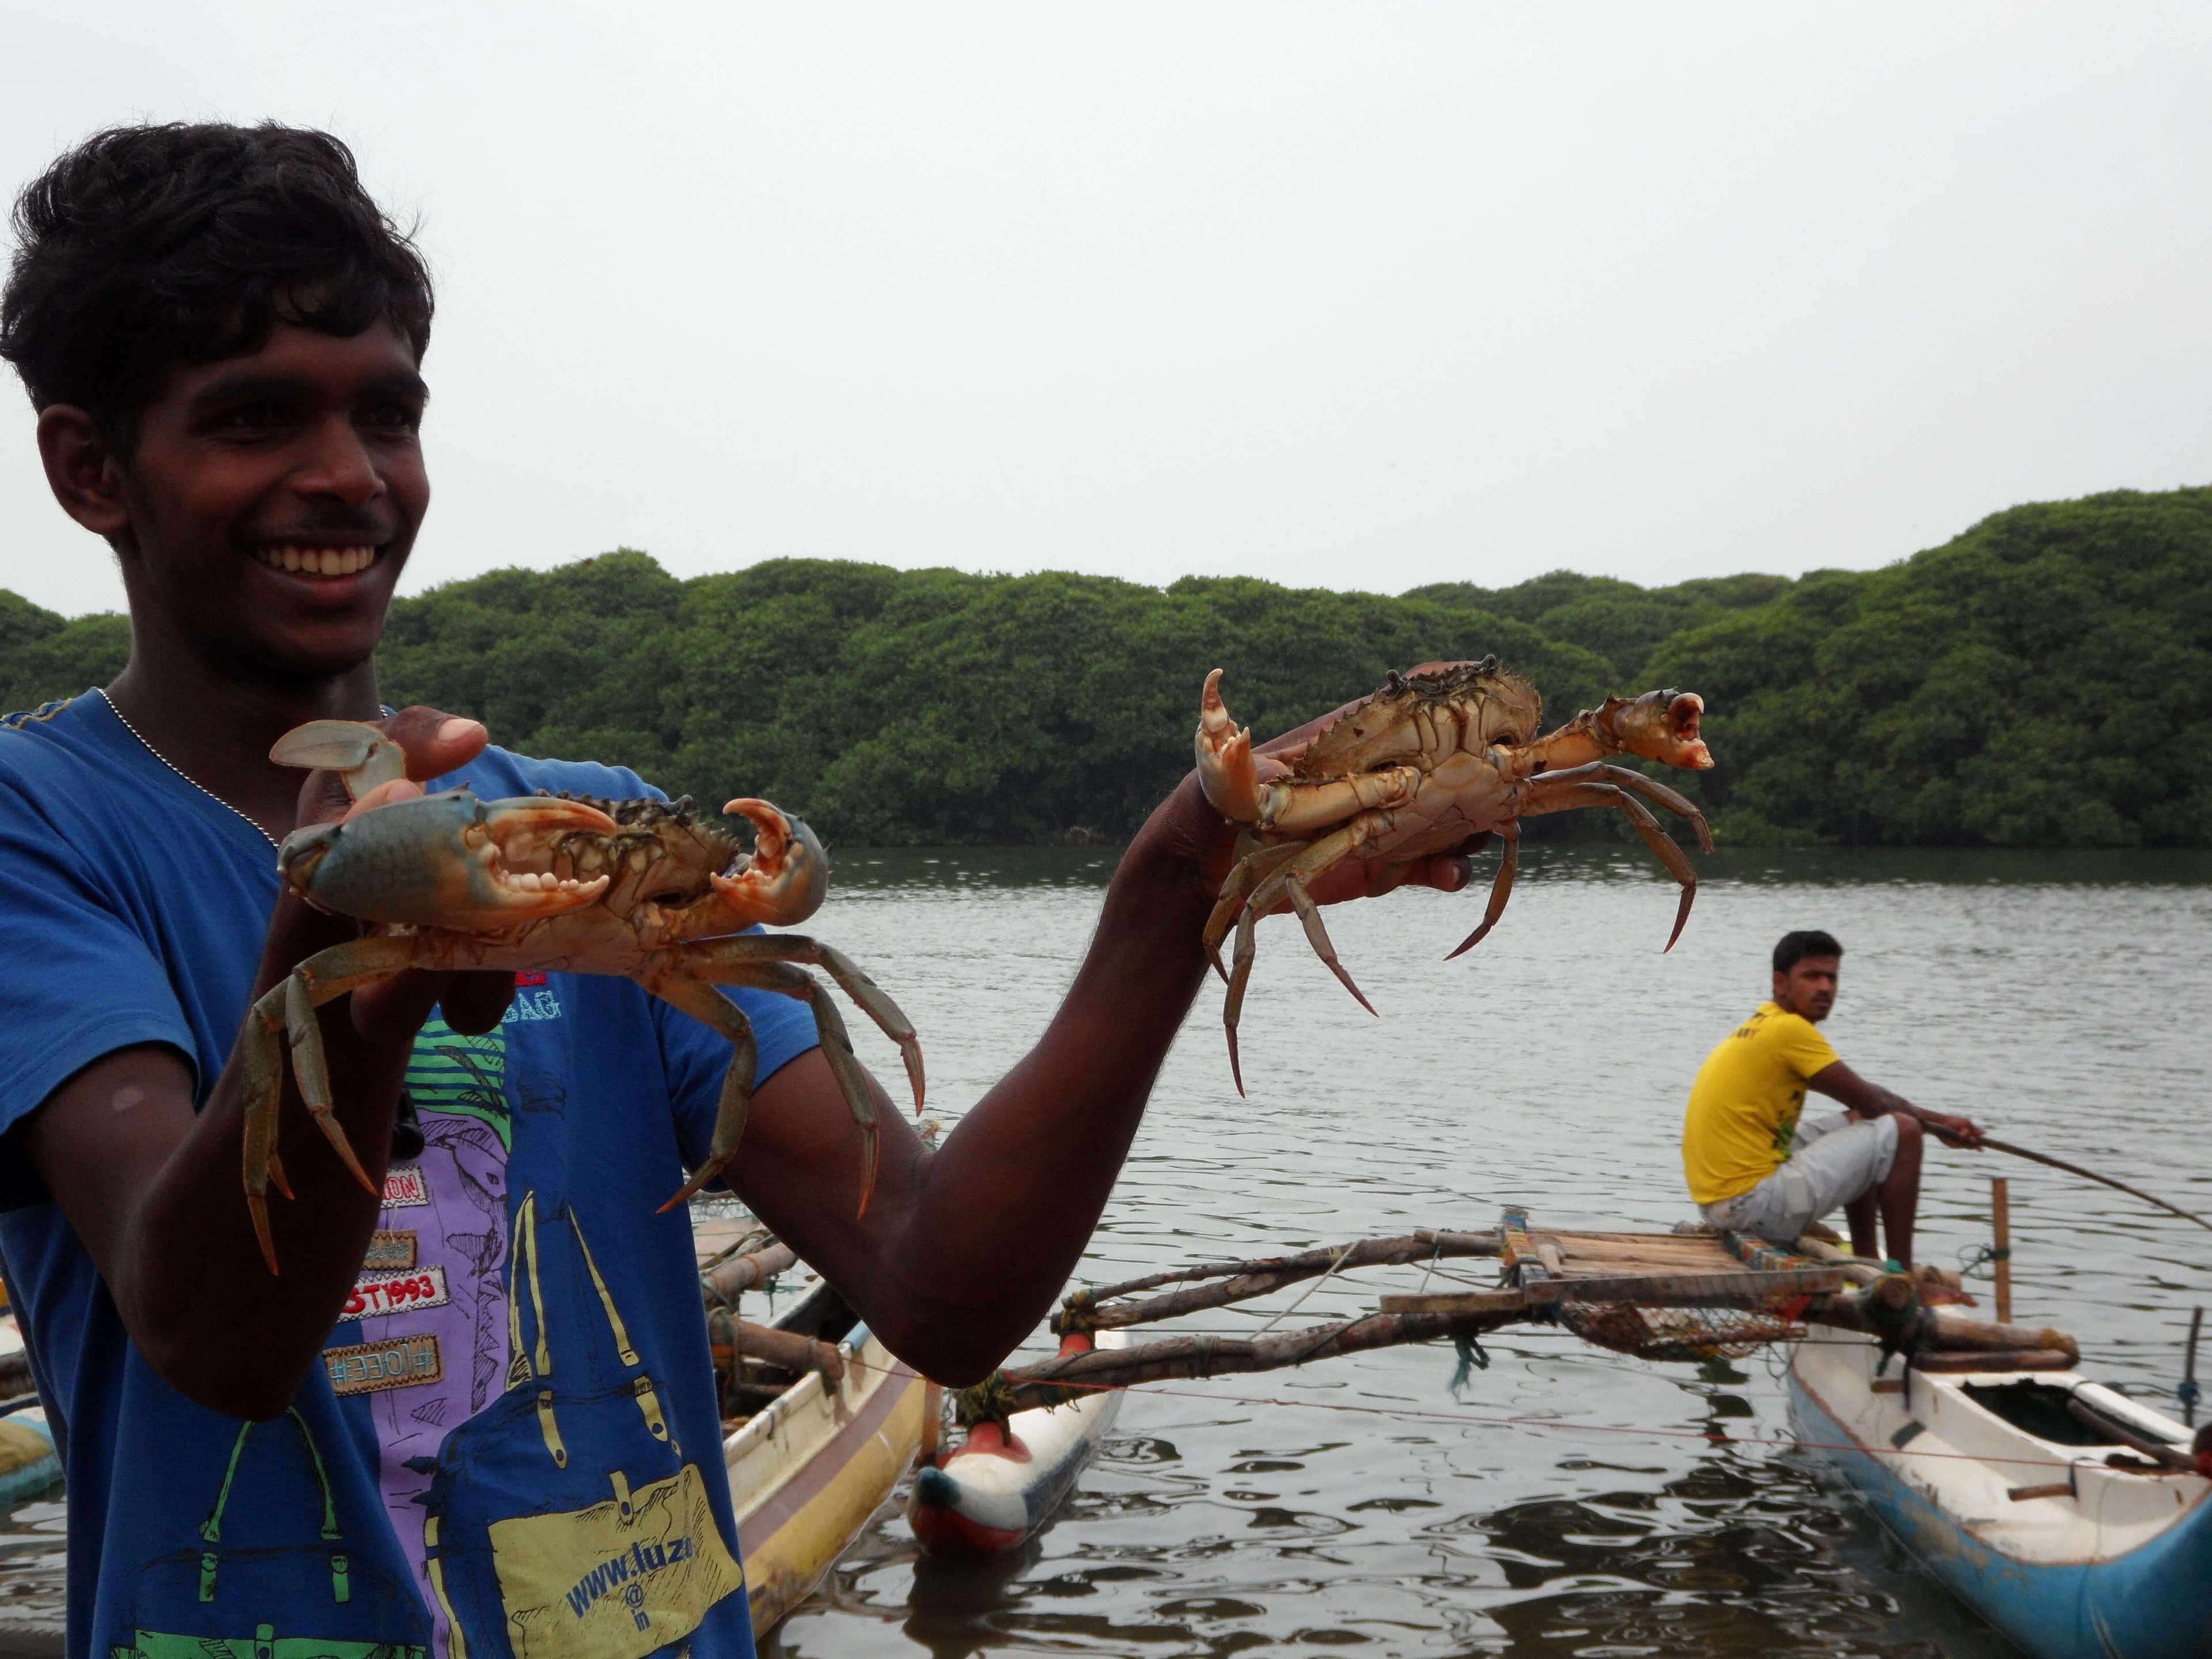 Eine Szene des Fangens von Krabben im Negombo-Fluss, die Vielfalt verbreitet haben